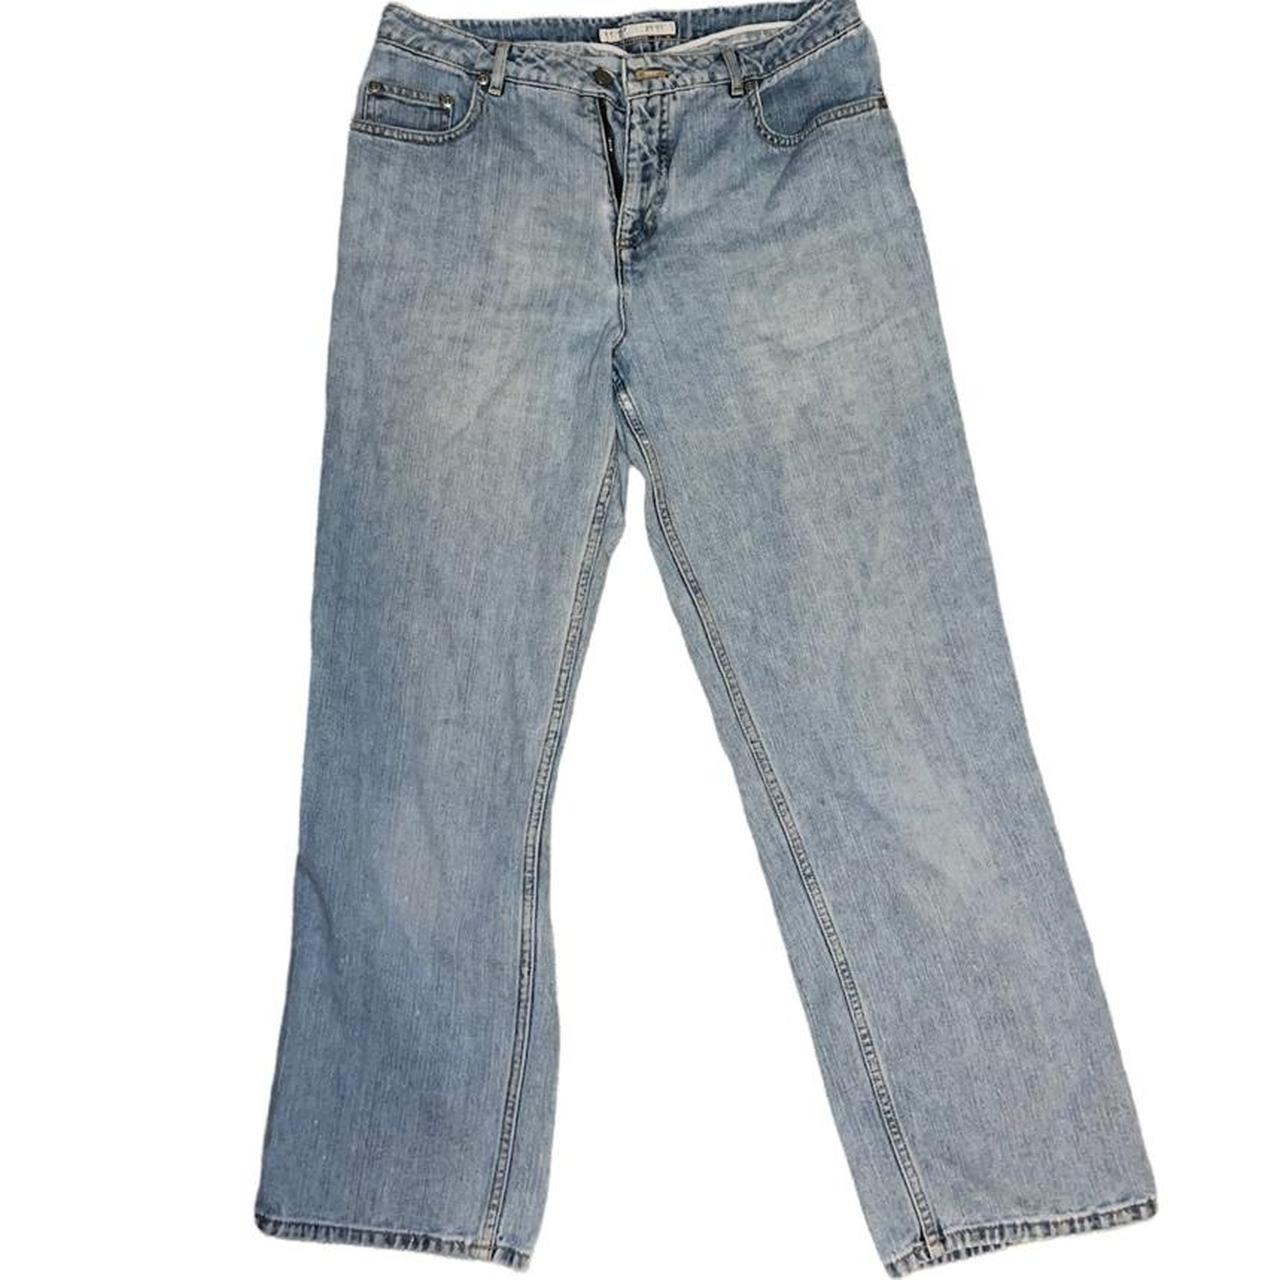 Geoffrey Beene Women's Jeans